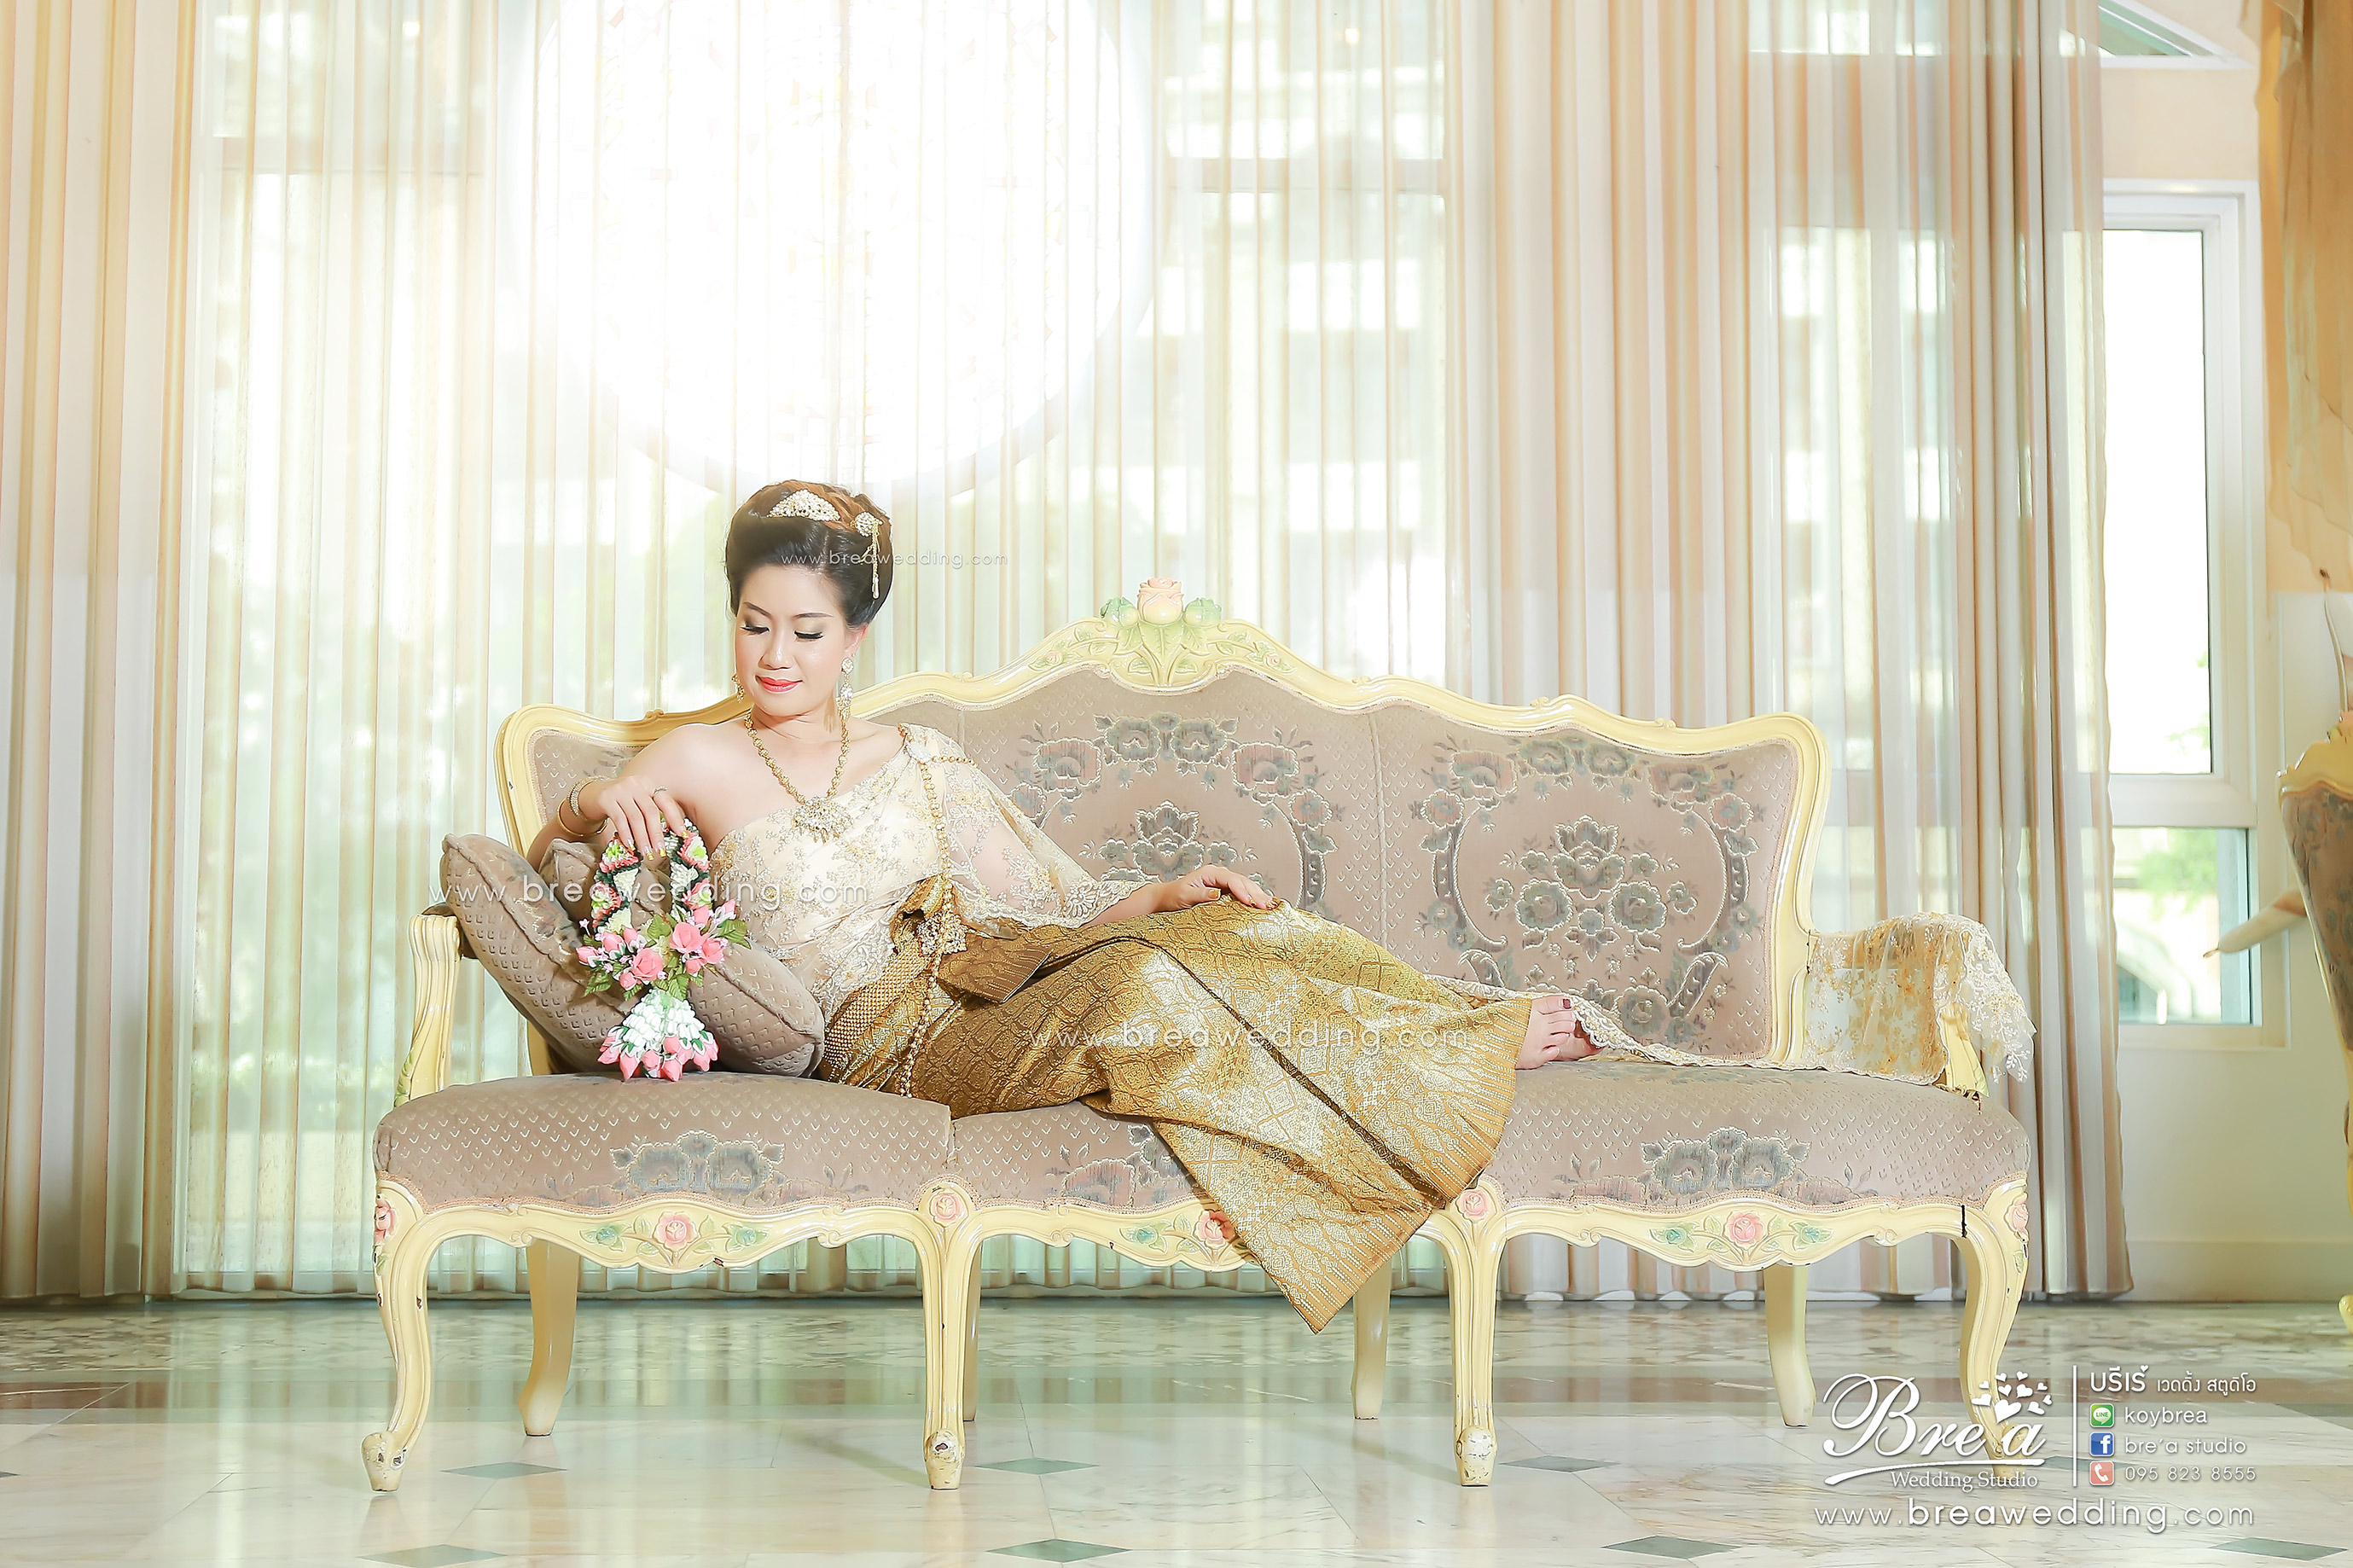 ถ่ายรูปแต่งงาน ถ่ายภาพพรีเวดดิ้ง หาช่างถ่ายรูปแต่งงาน ชุดแต่งงาน นนทบุรี